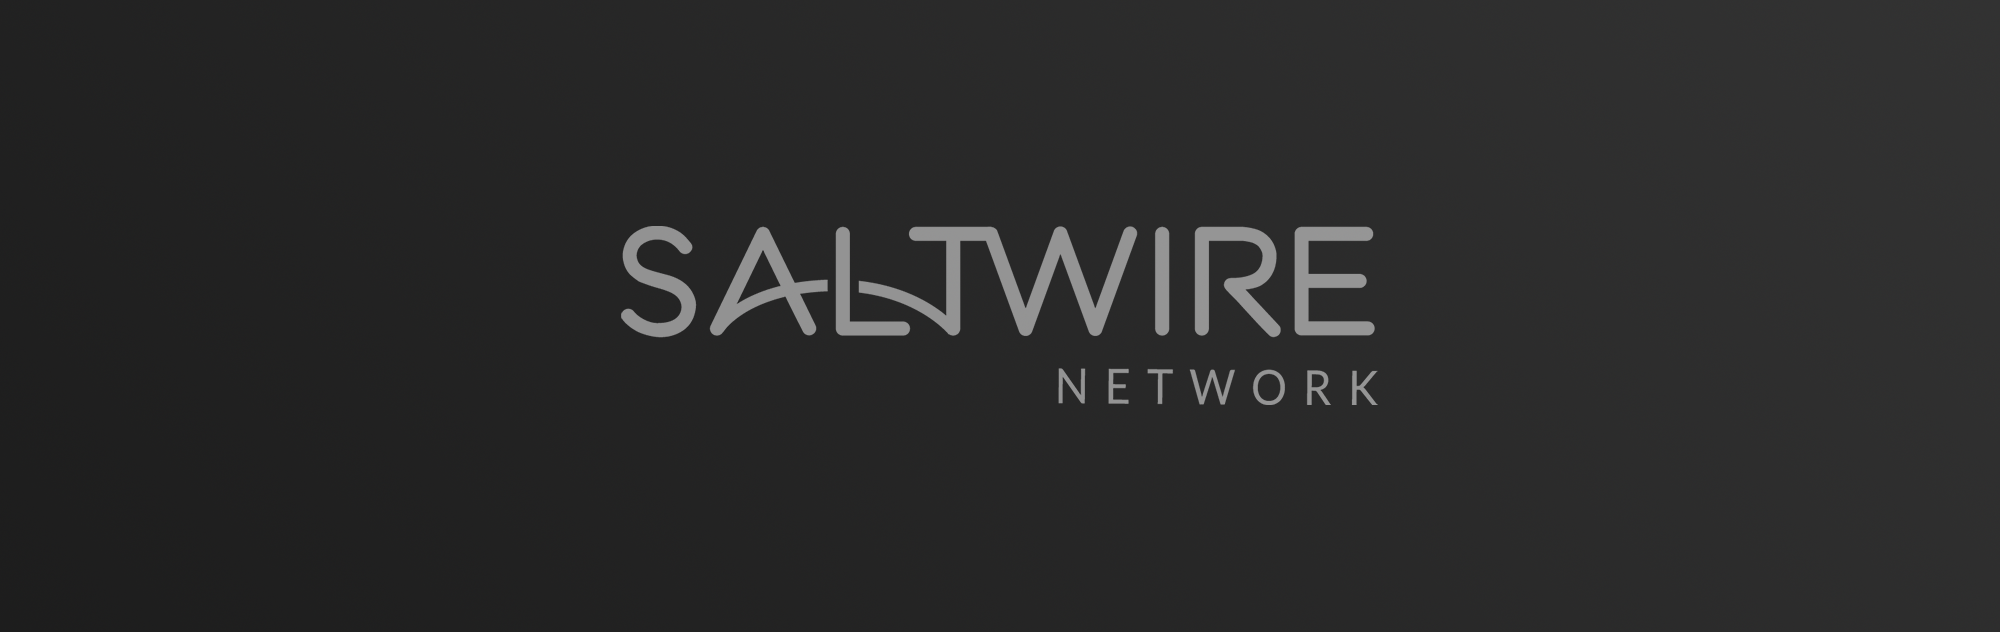 SaltWire Network logo on dark gradient background